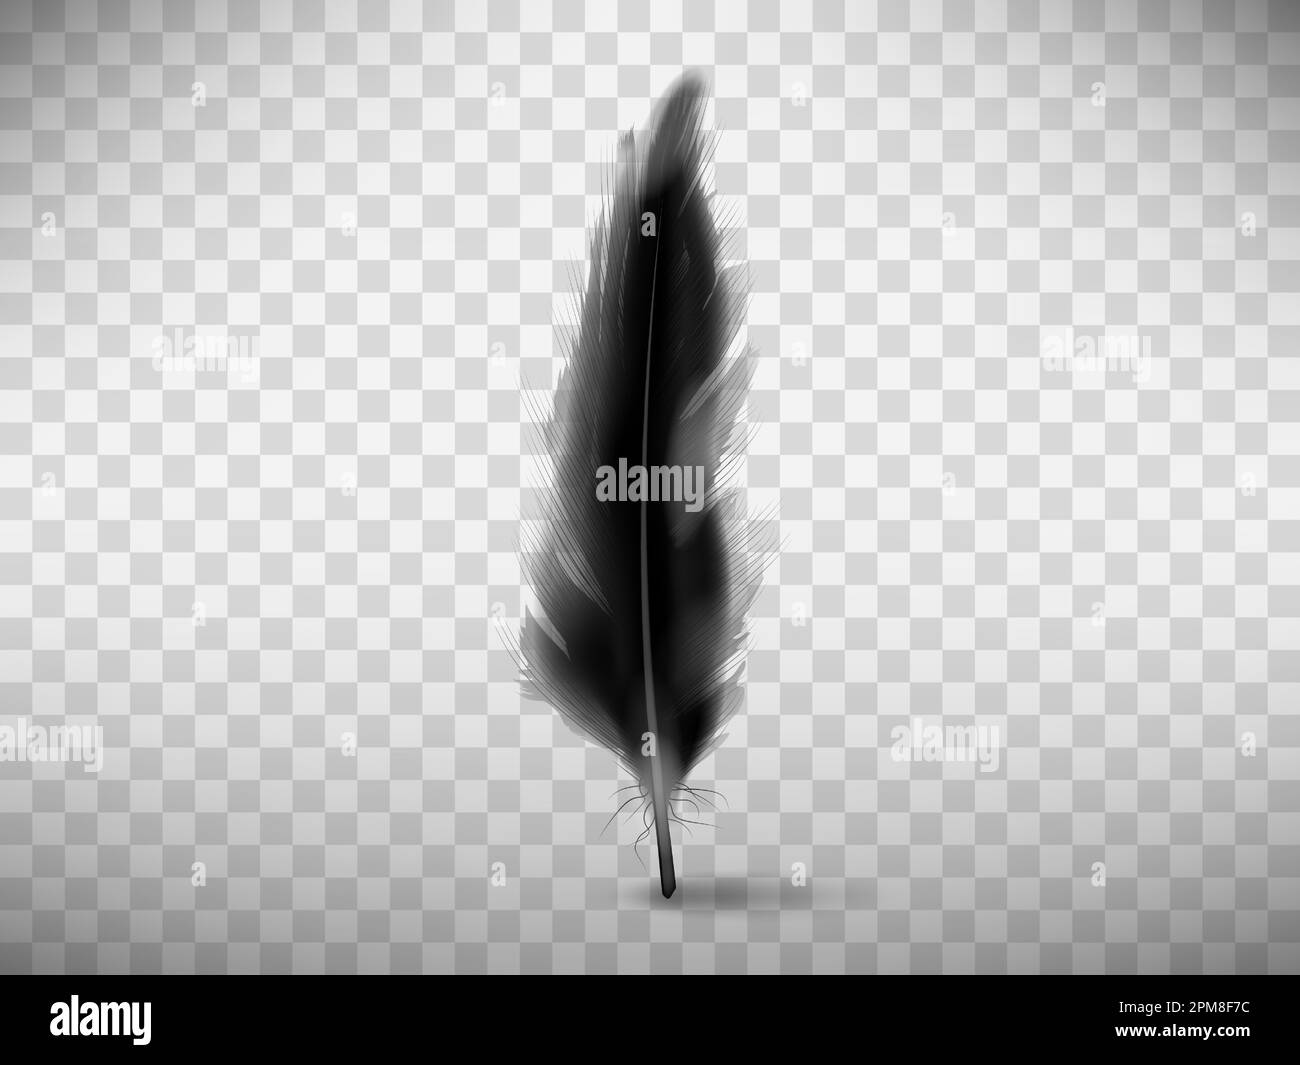 Plume douce noire avec vecteur d'ombre illustration réaliste, isolée sur fond transparent. Plume d'aile d'oiseau ou d'ange déchu, symbole de douceur, élément de design Illustration de Vecteur